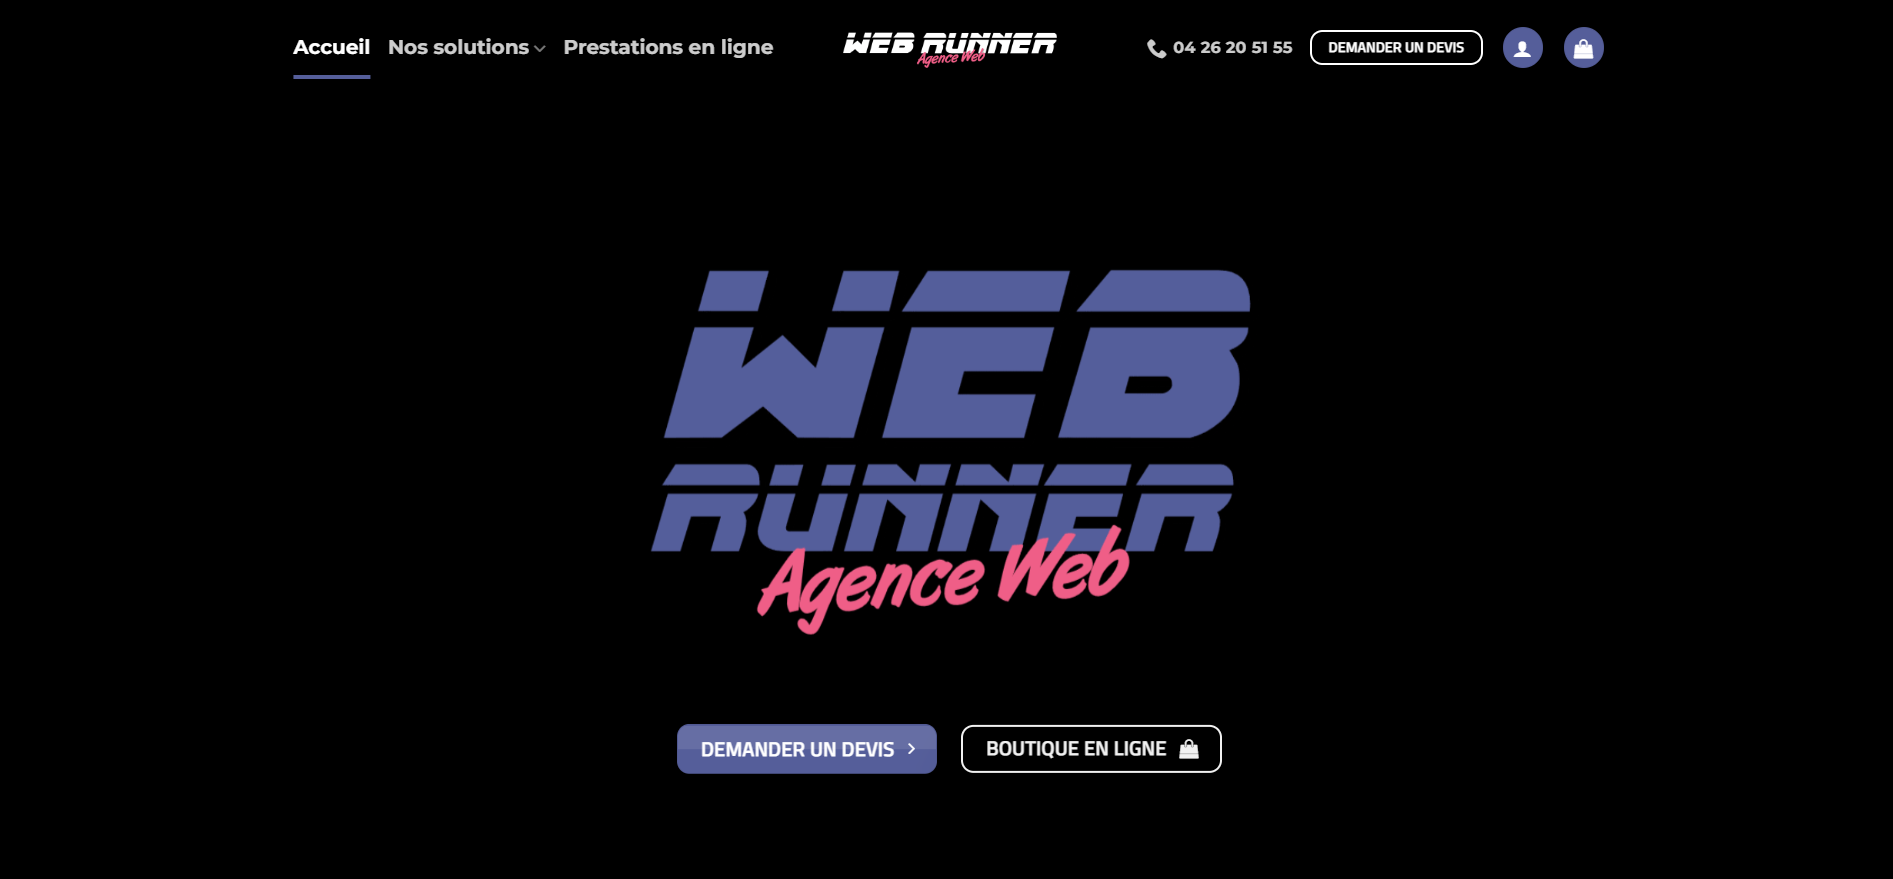  Agence Web Runner — création de site internet — référencement — visite virtuelle — réalité virtuelle — agence web - Agence Web à l'Ile-Rousse